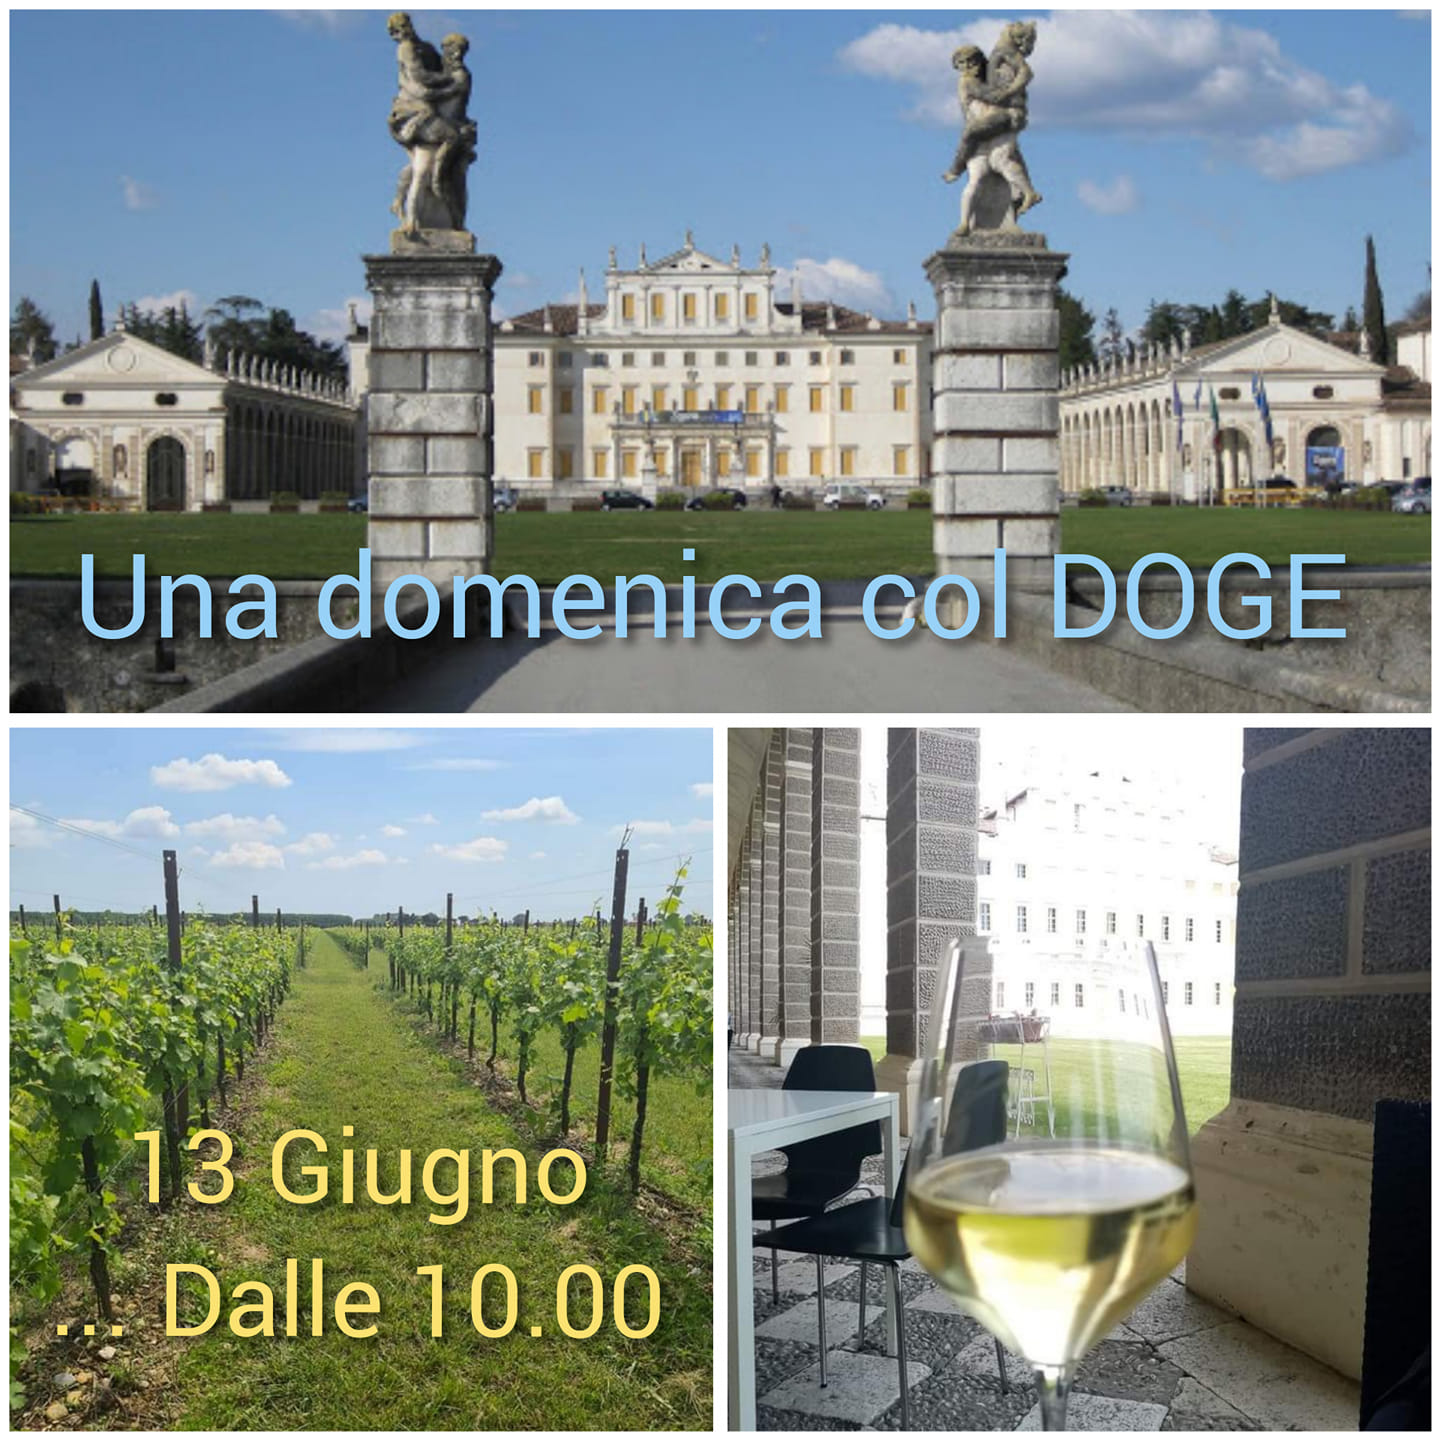 Una domenica col Doge : tra Storia, Arte, Vino e Musica - EventiFVG.it